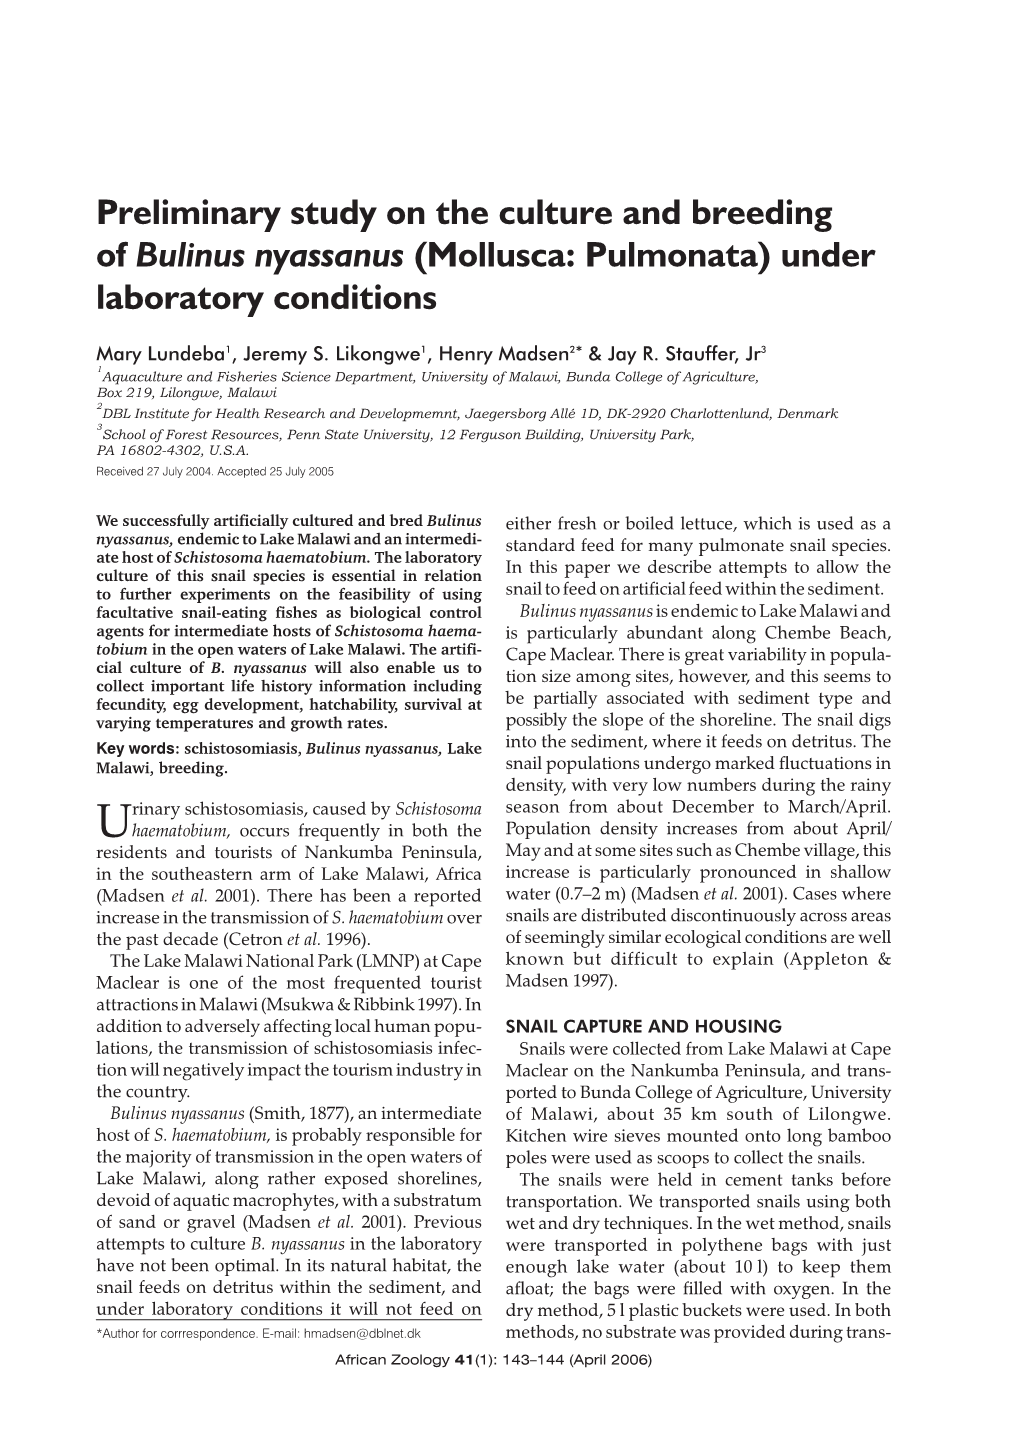 (Mollusca: Pulmonata) Under Laboratory Conditions